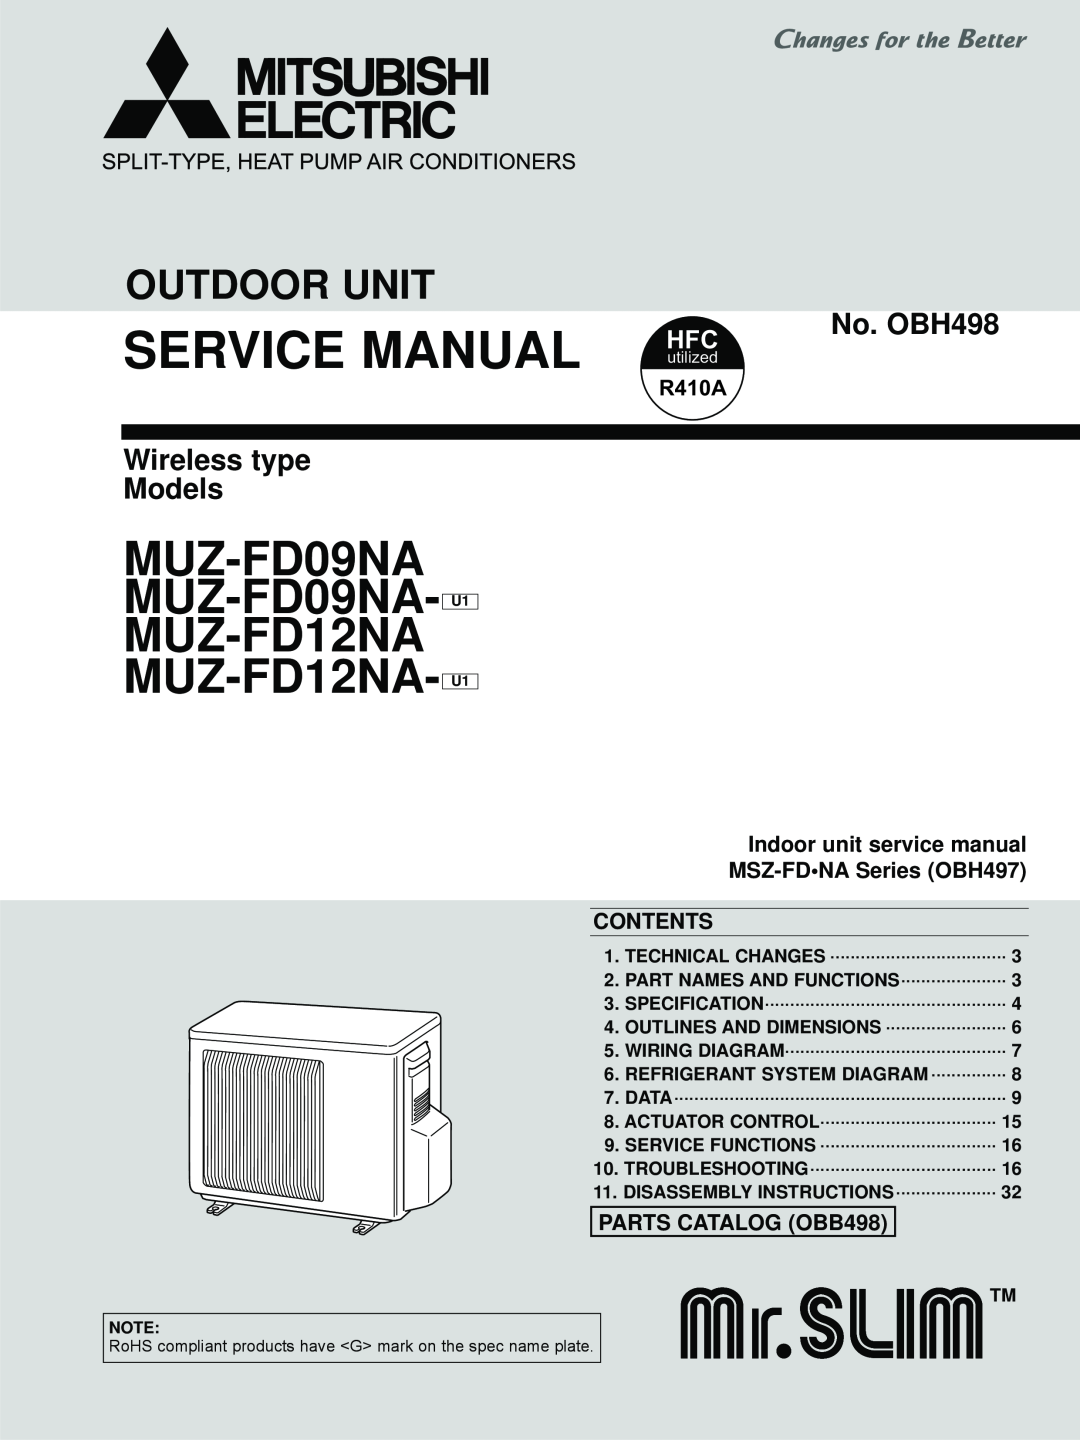 Black & Decker MUZ-FD12NA- U1 service manual R410A, Contents, PARTS CATALOG OBB498, MUZ-FD09NA MUZ-FD09NA- U1 MUZ-FD12NA 